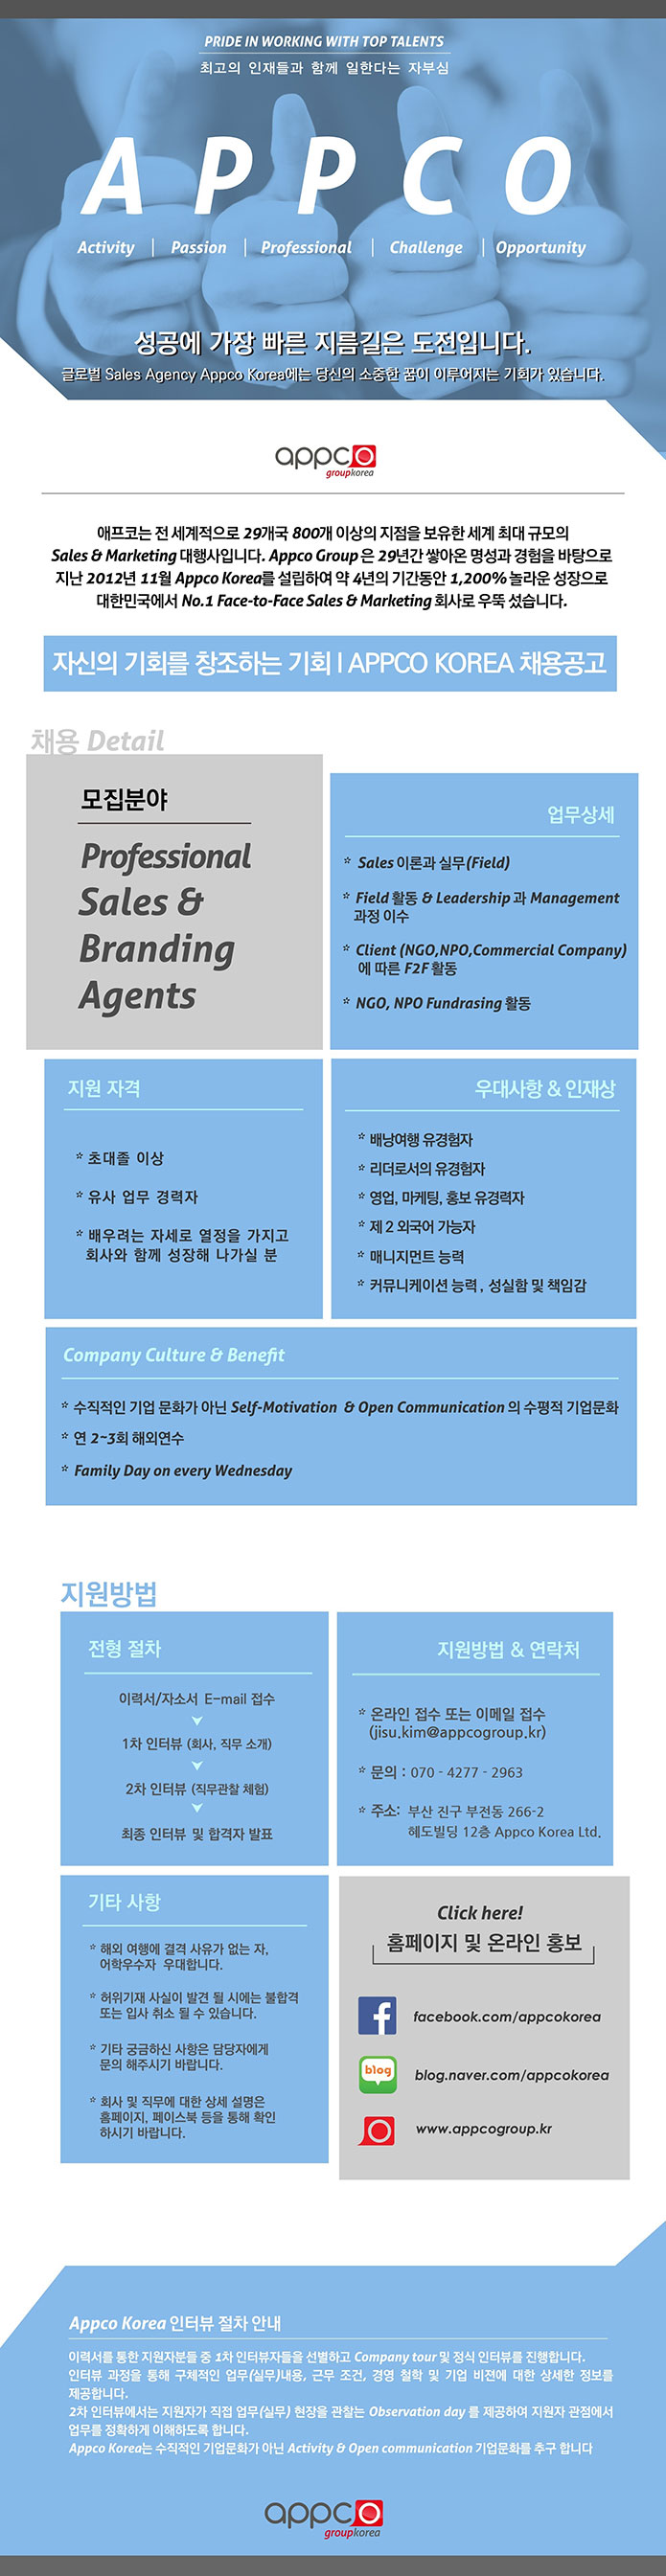 [외국계/부산지점] APPCO KOREA Professional Sales & Branding Agents 모집